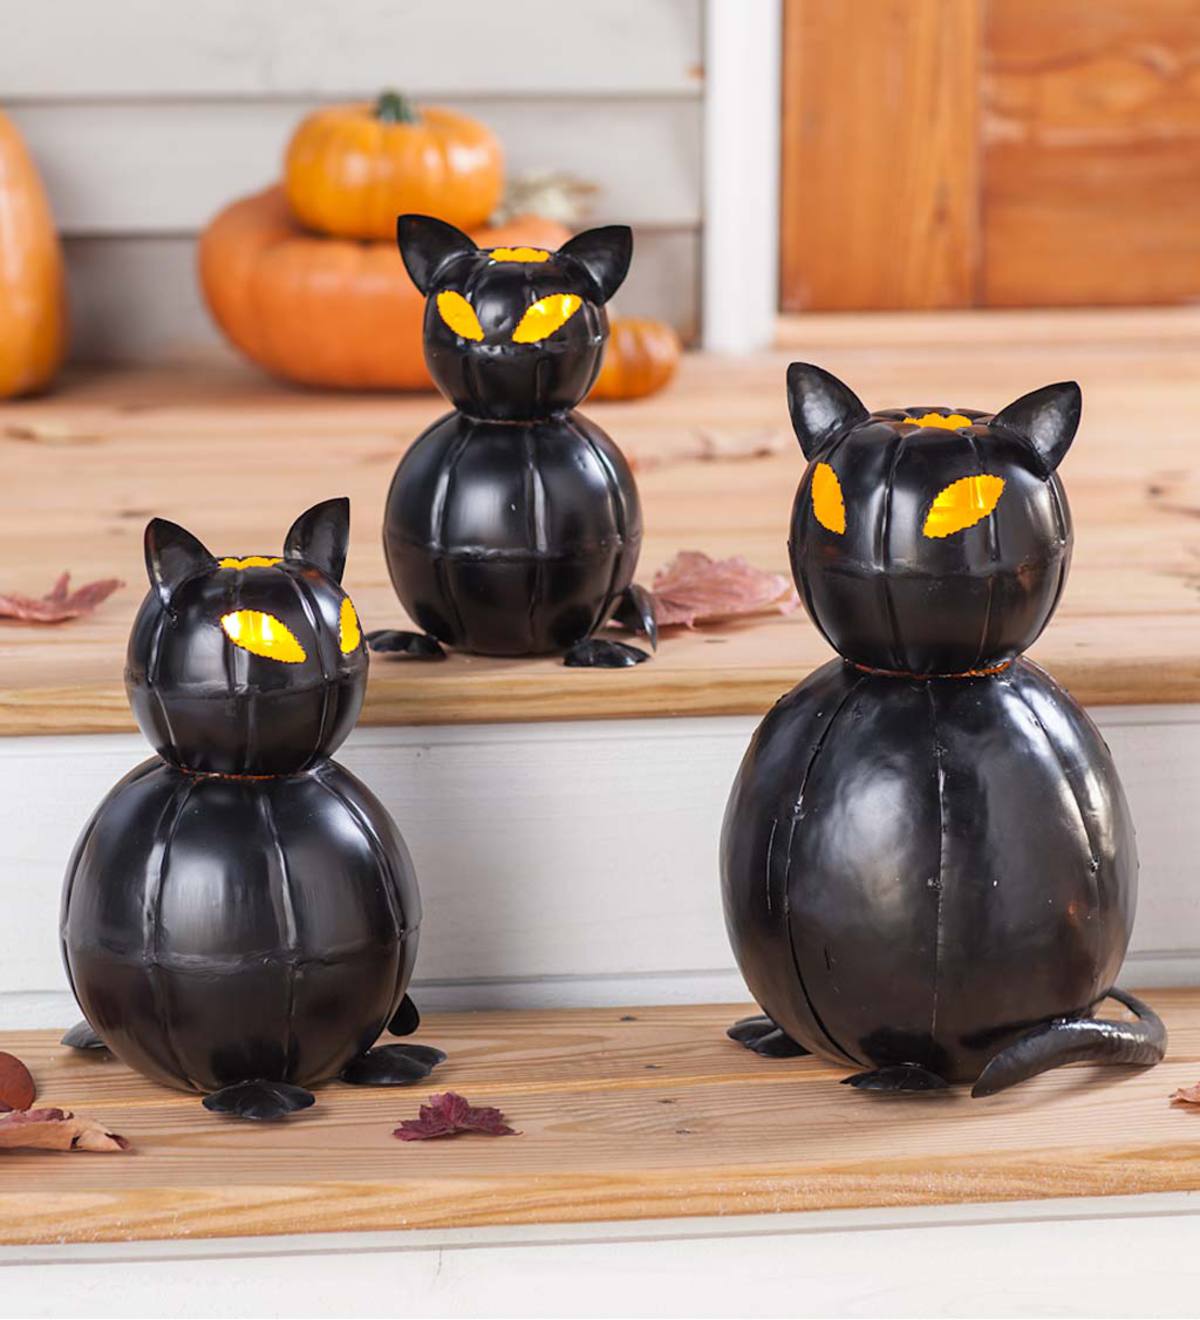 Metal Black Cat Lanterns, Set of 3